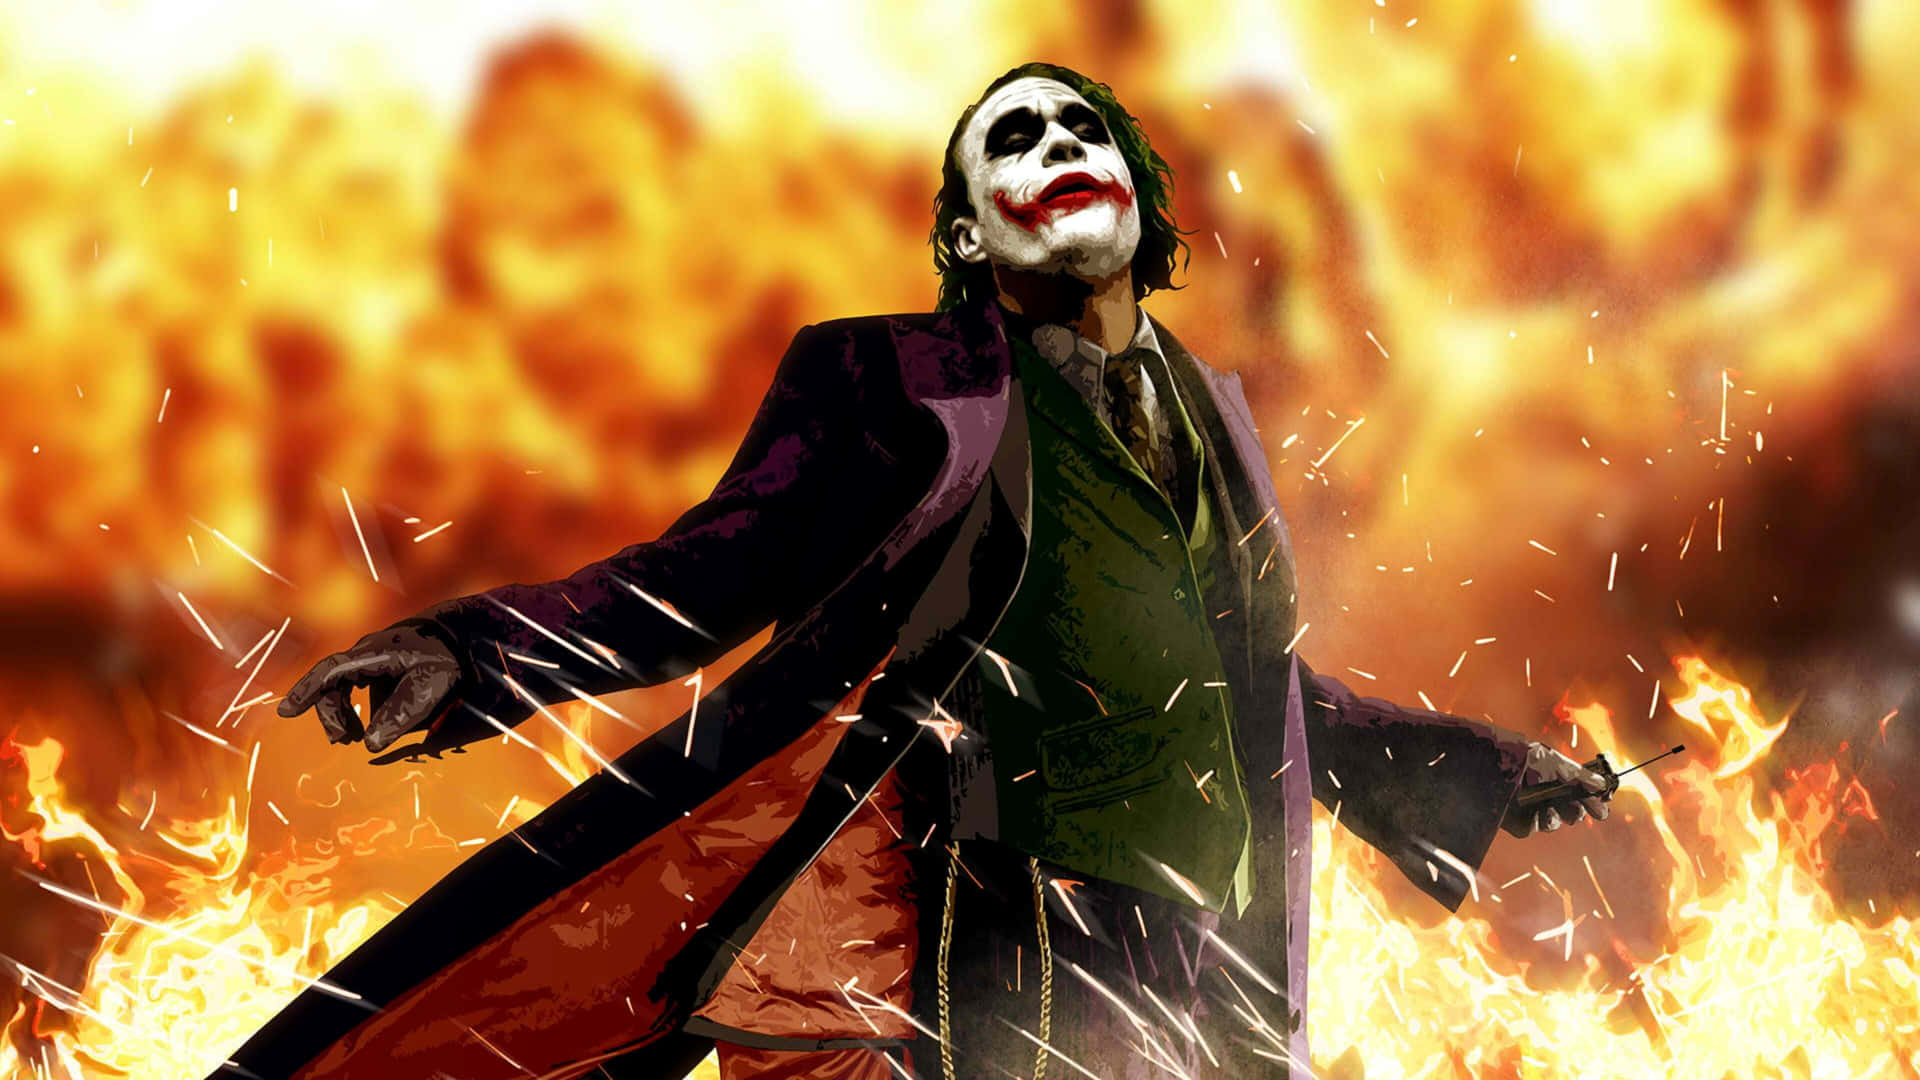 Dark Knight Joker In 4k Ultra Hd Animated Poster Design Wallpaper